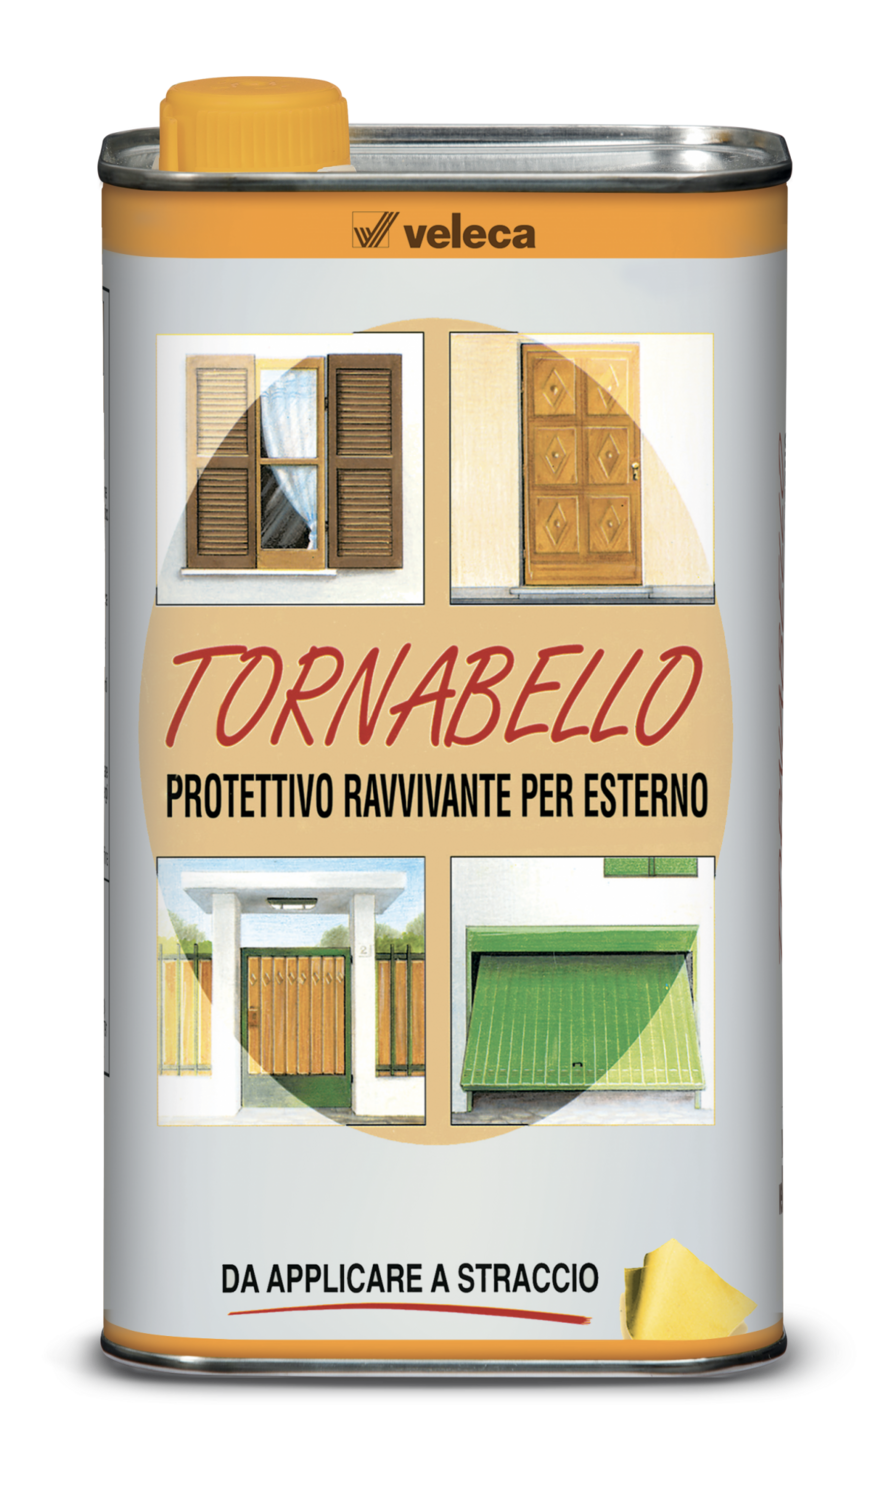 Tornabello - Protettivo ravvivante per esterno 0,25 LT